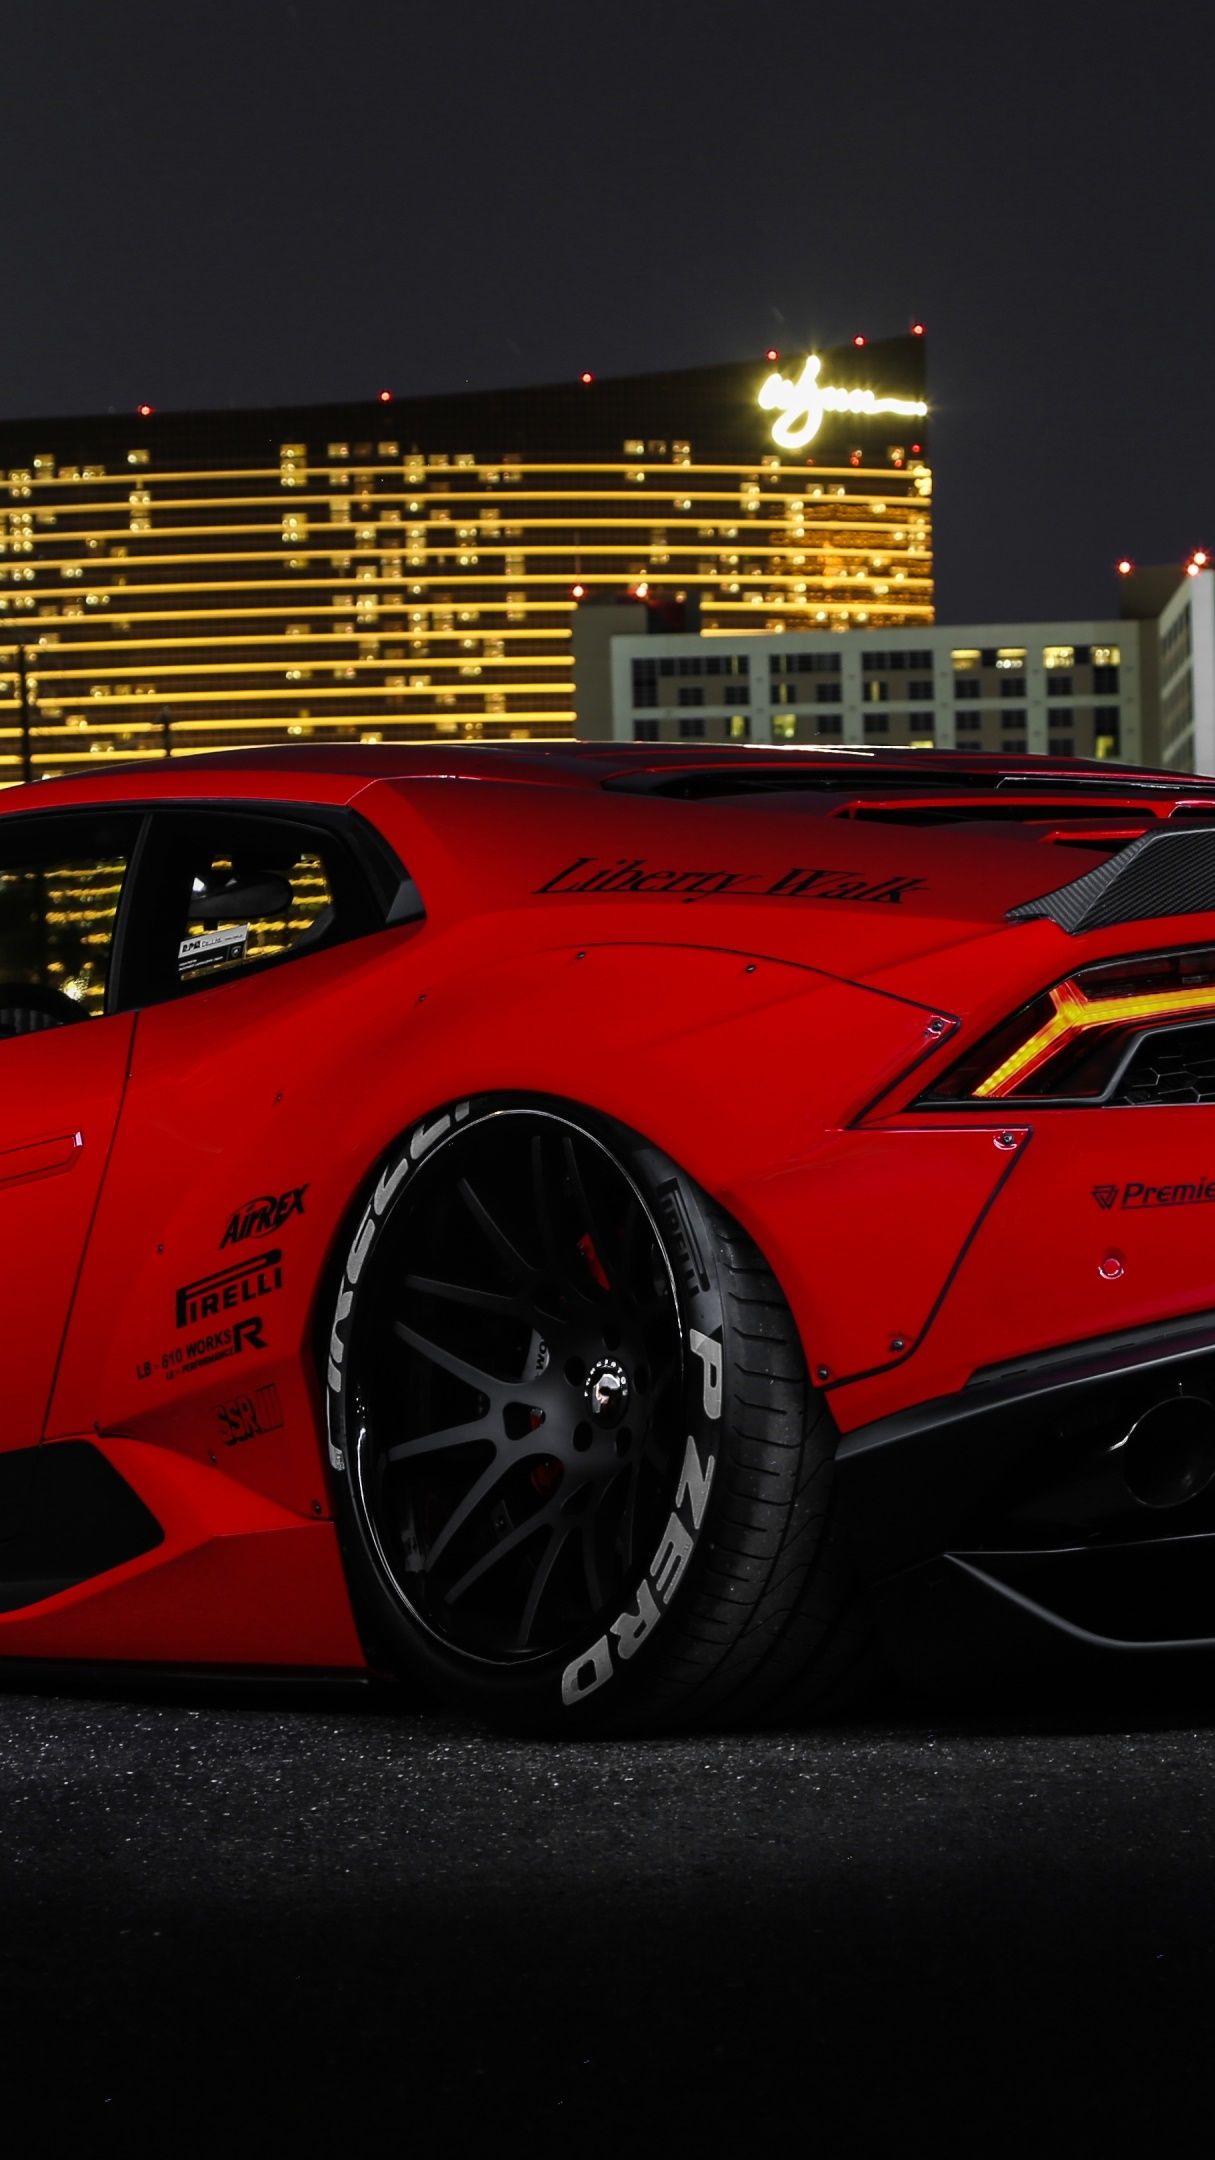 Lamborghini Huracan Liberty Walk wallpaper - backiee